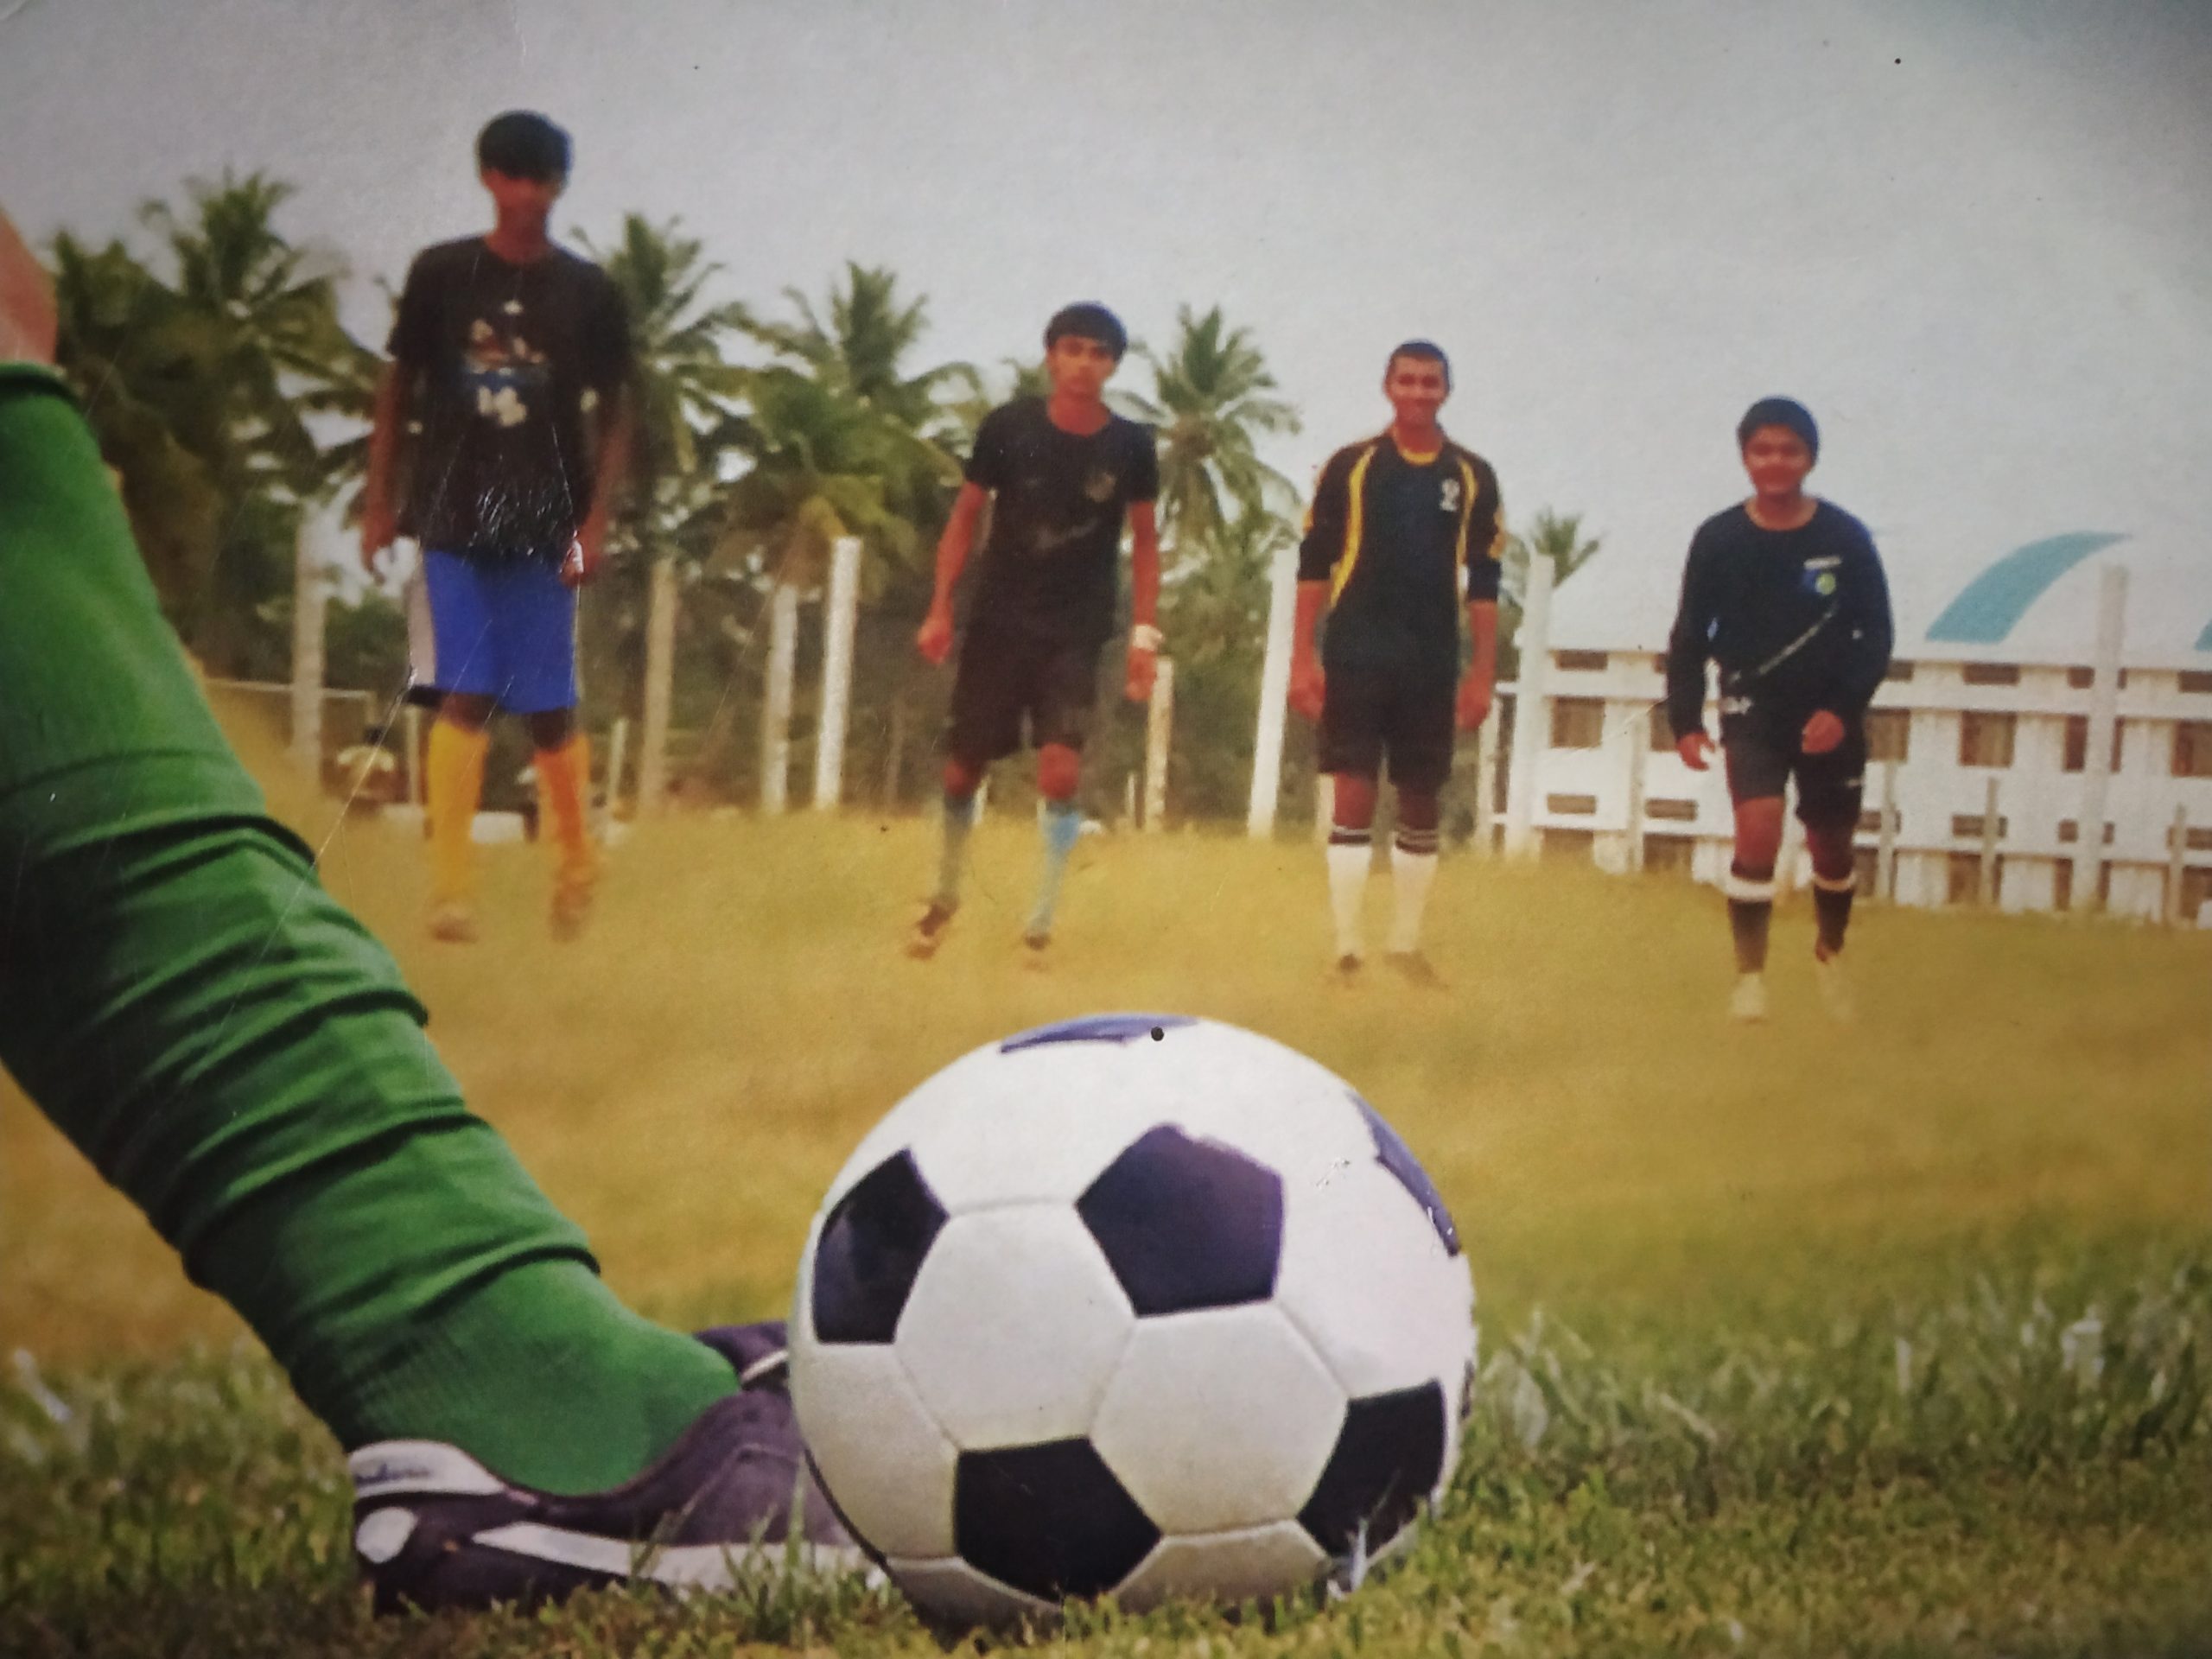 Meninos jogando futebol - Imagem grátis por Shaikh Ibrahim Badshah em PixaHive.com